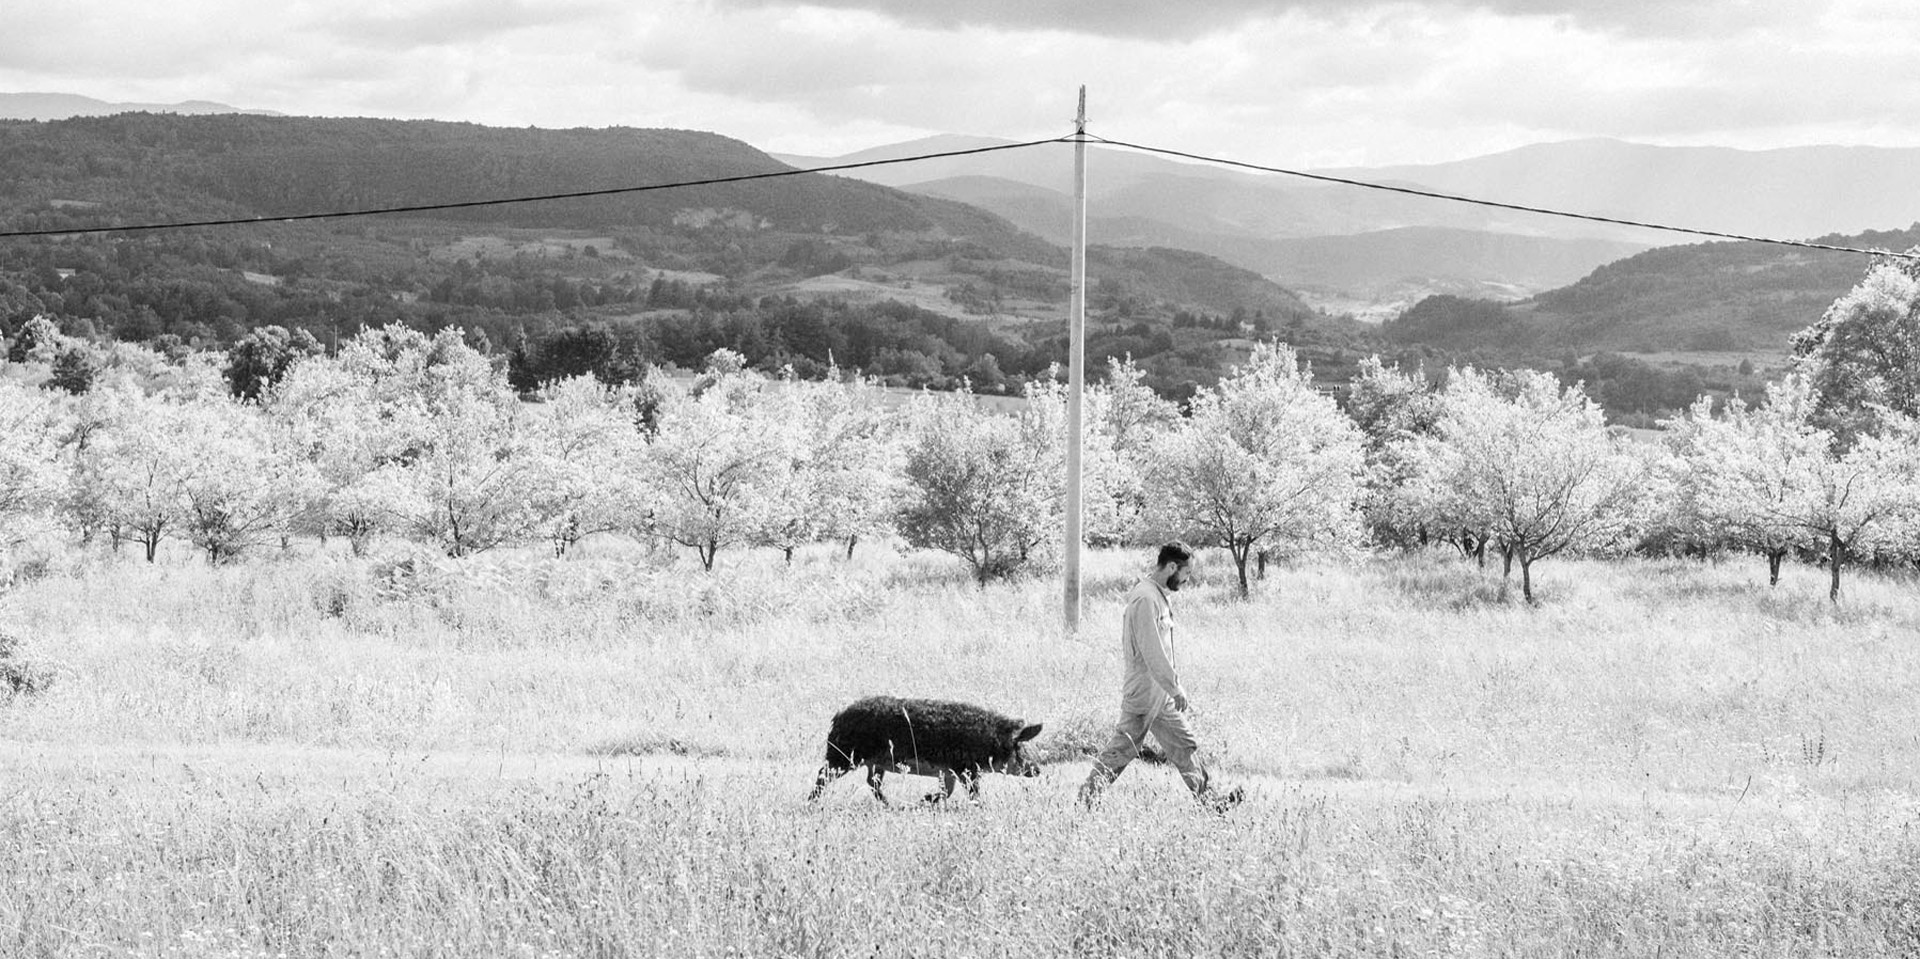 Accompagné d’un porc truffier, un homme traverse un paysage sauvage.